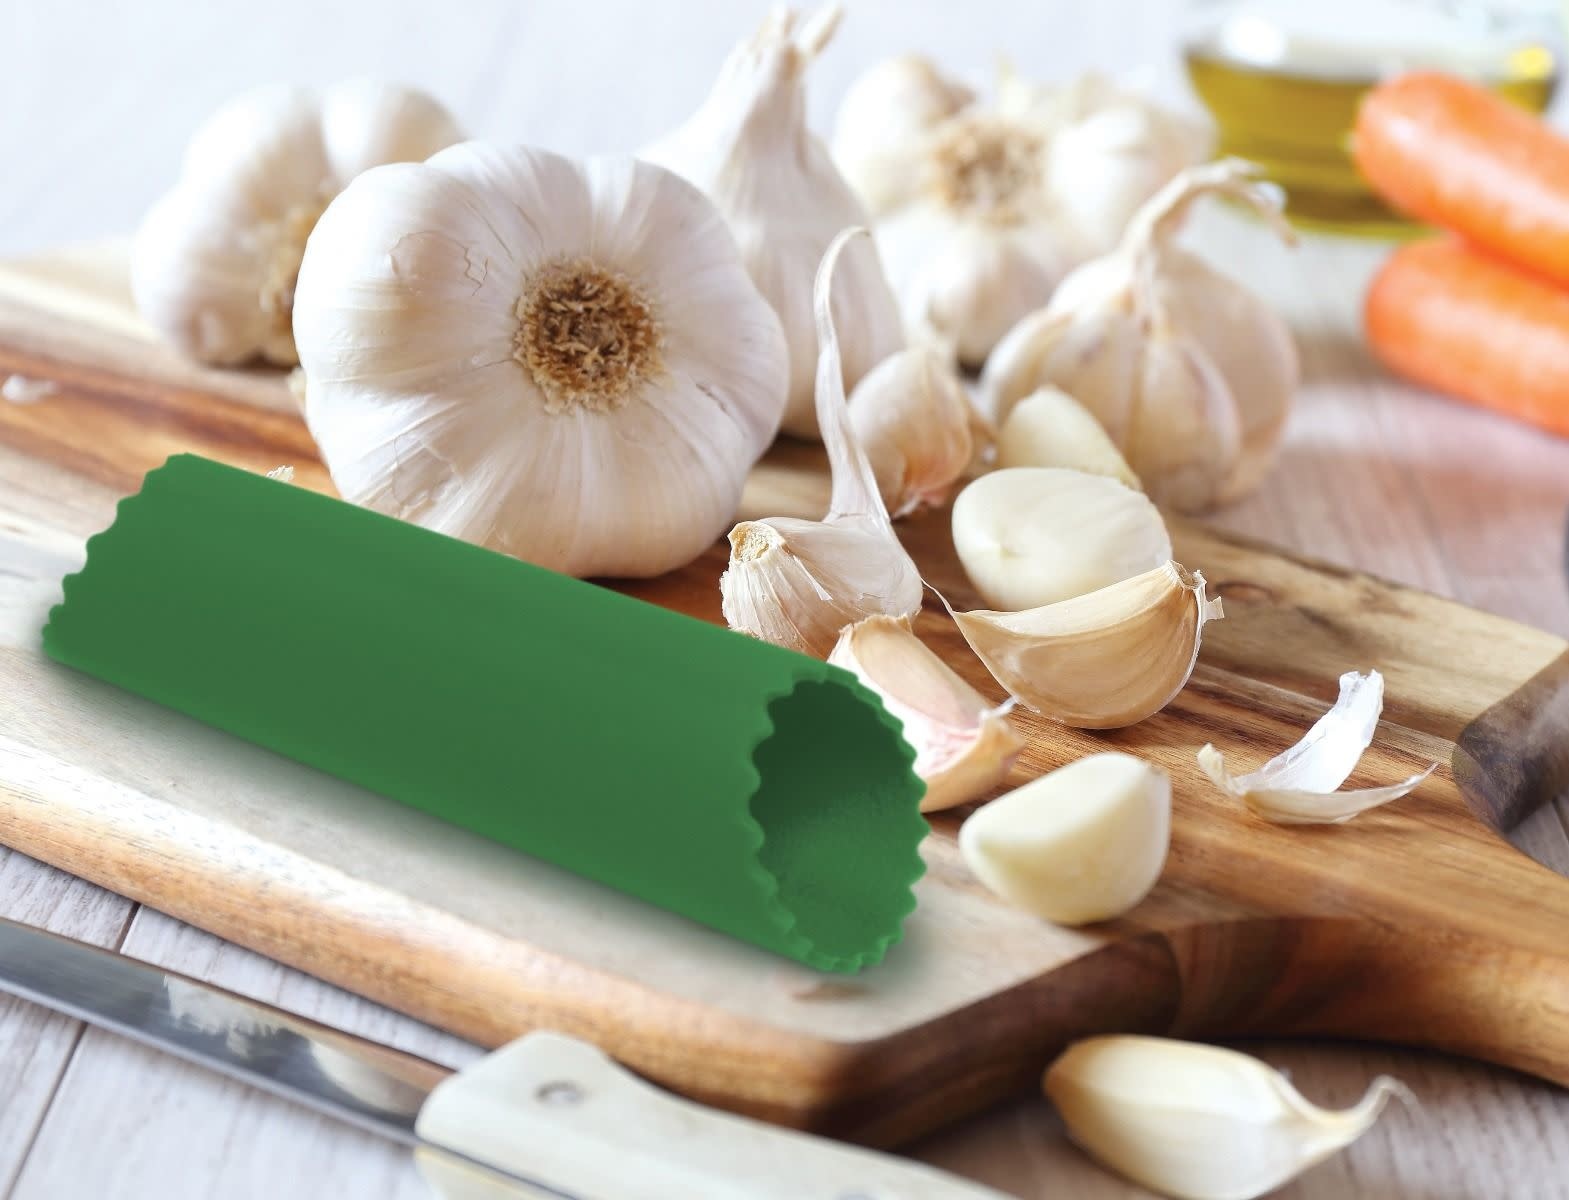 Garlic peeling machine for removing garlic clove skin